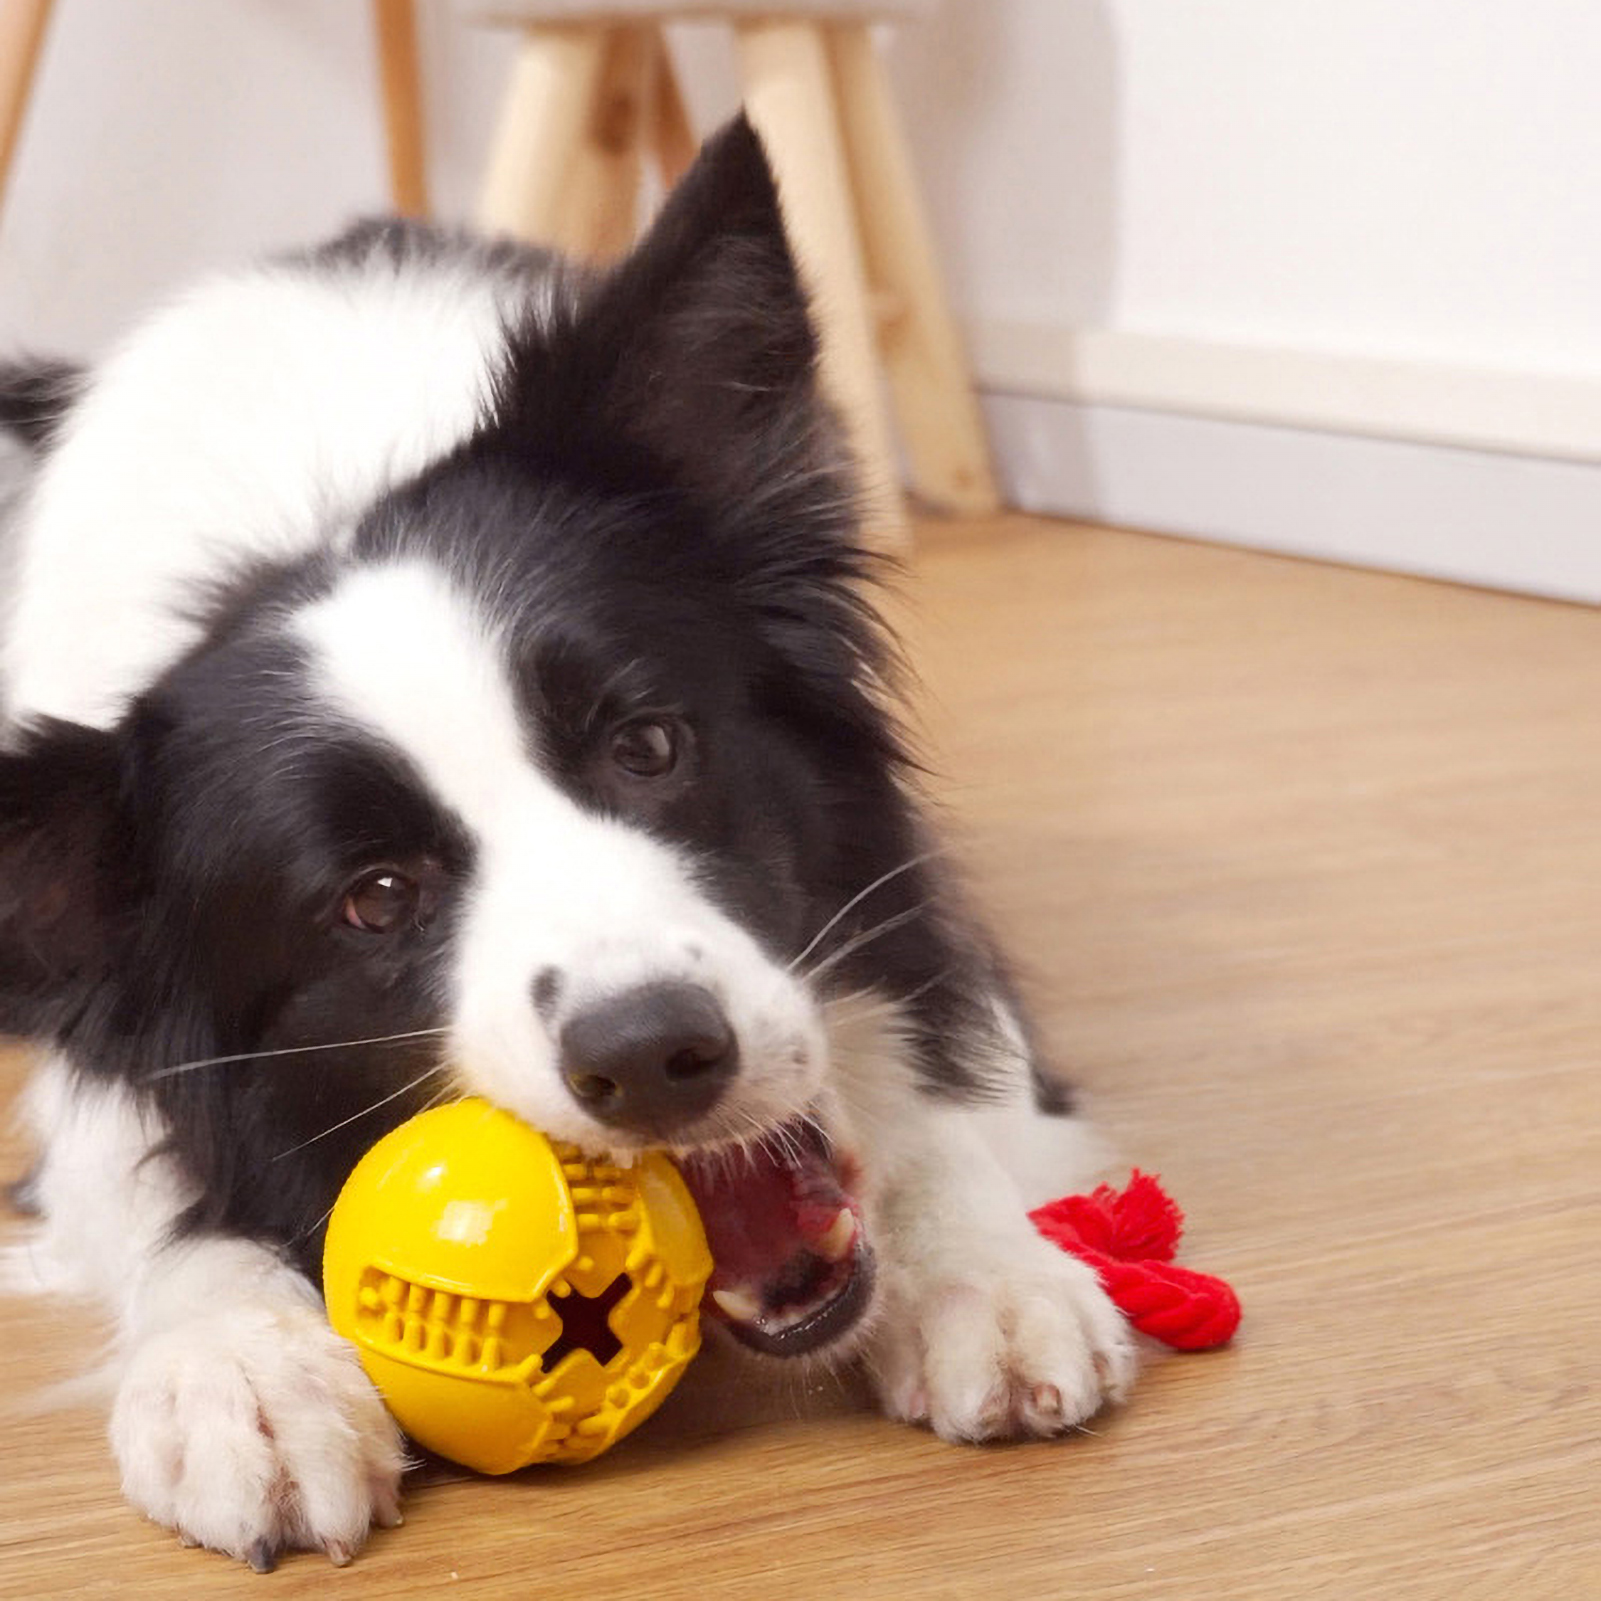 do tennis balls ruin dogs teeth